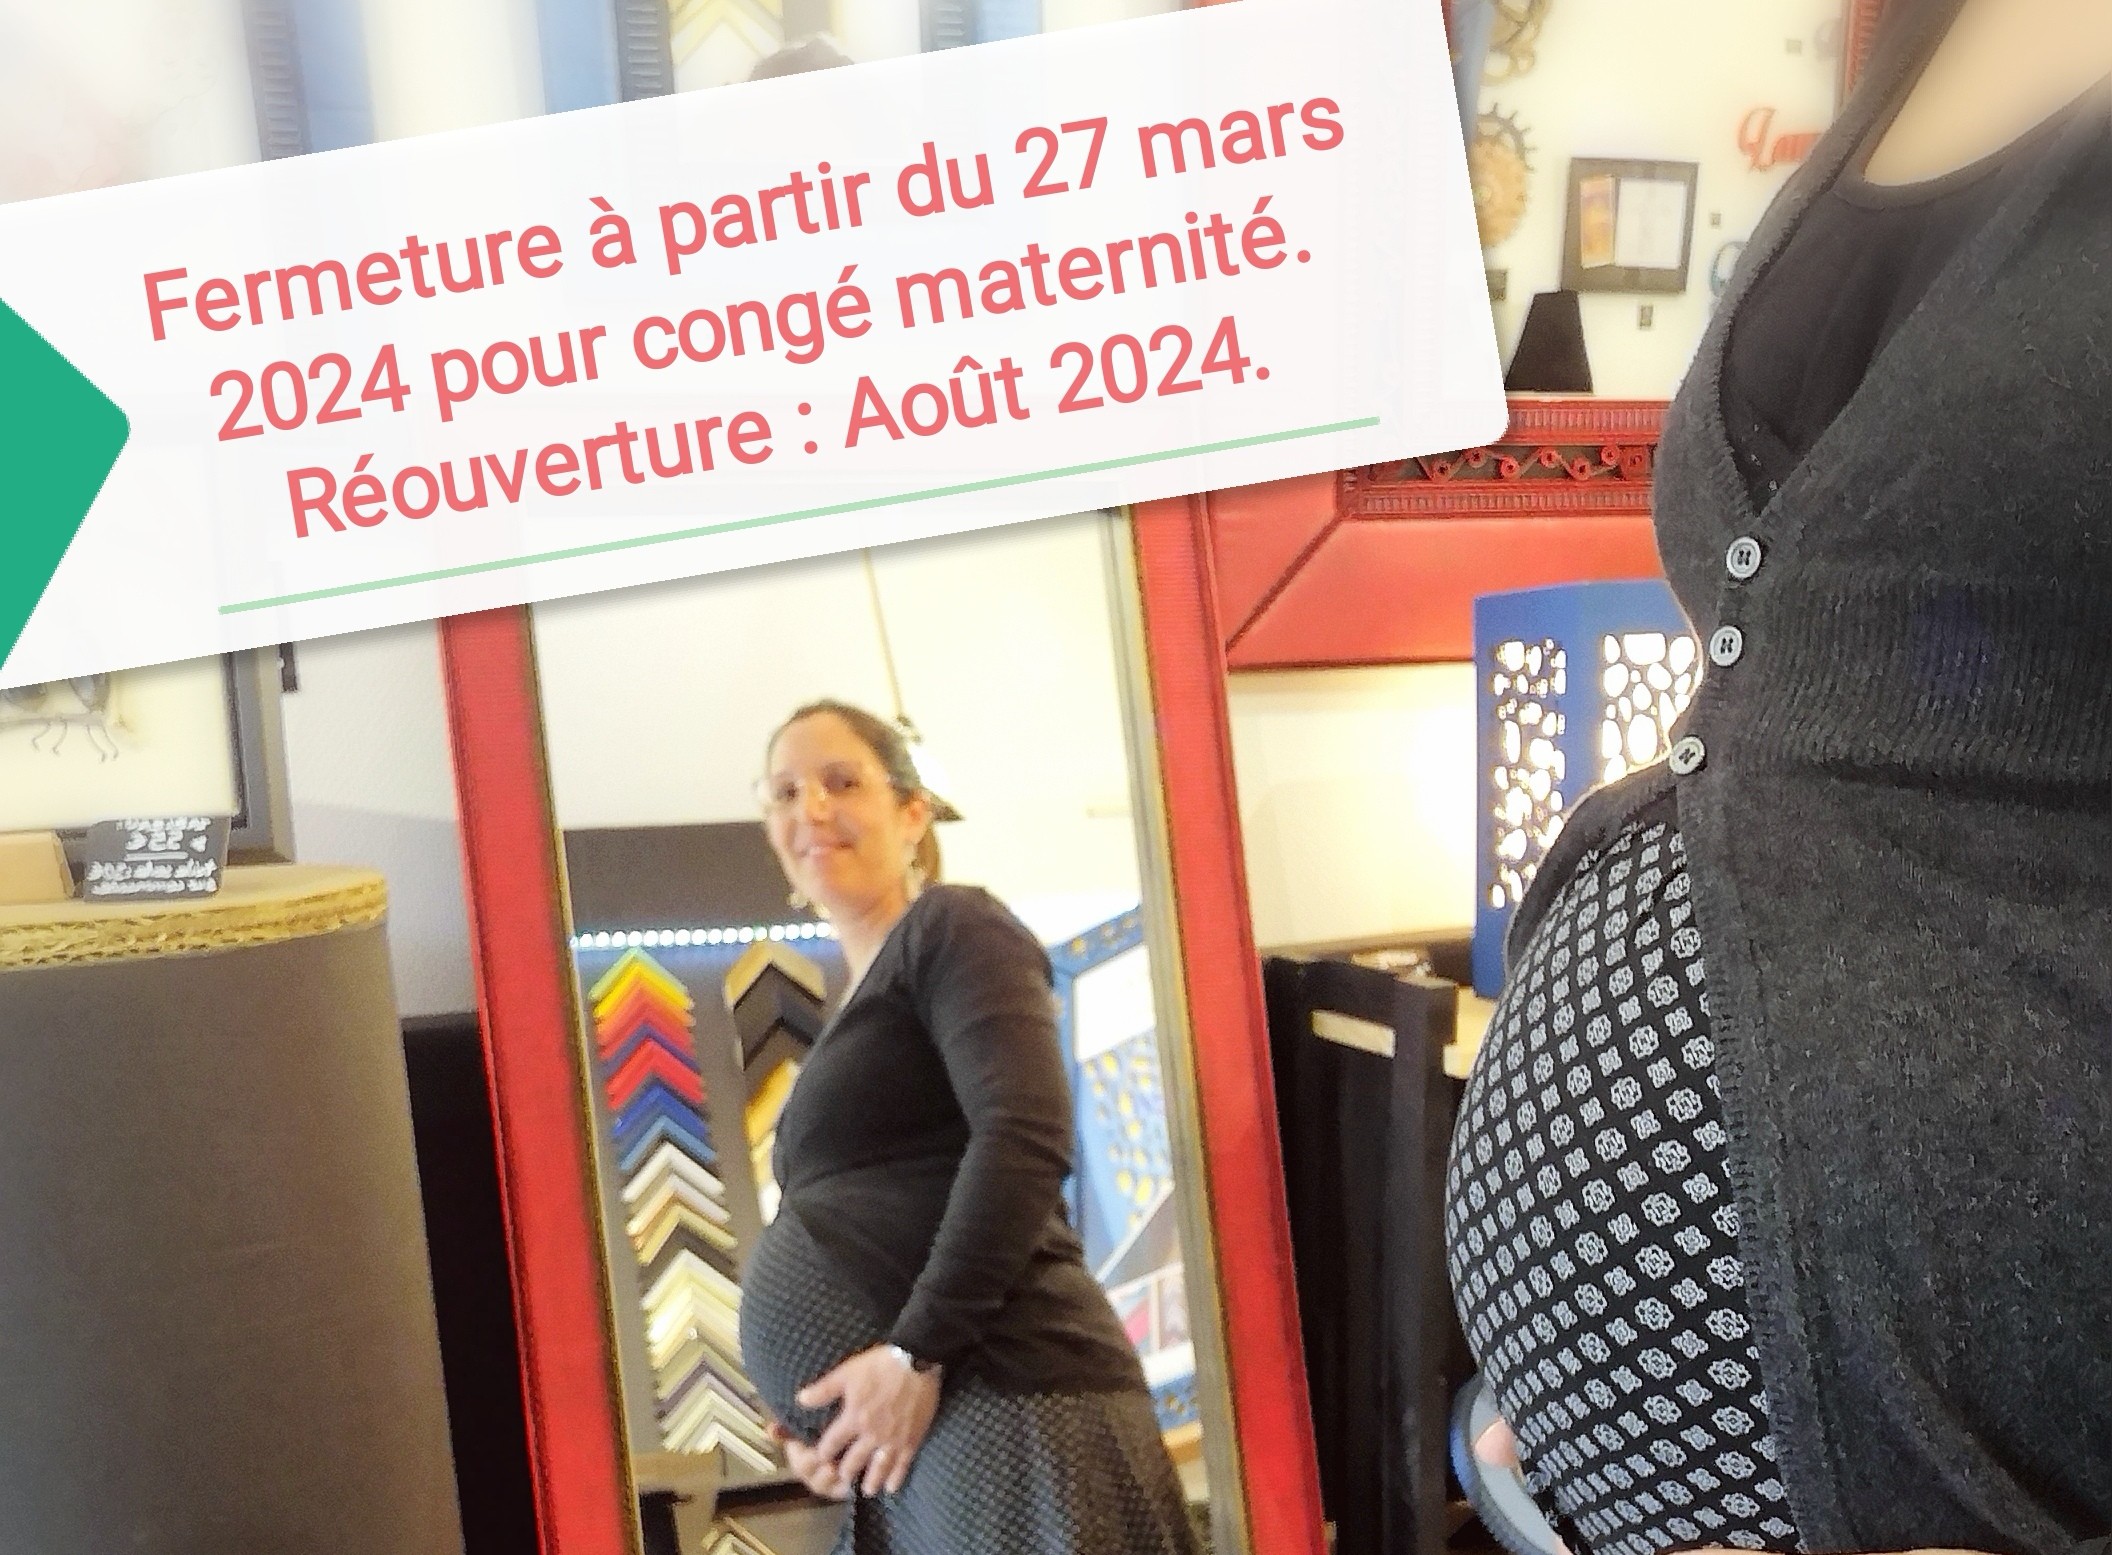 Fermeture de l'atelier/boutique Laura Dambre encadrement le 26 mars pour congé maternité - Réouverture Août 2024. 